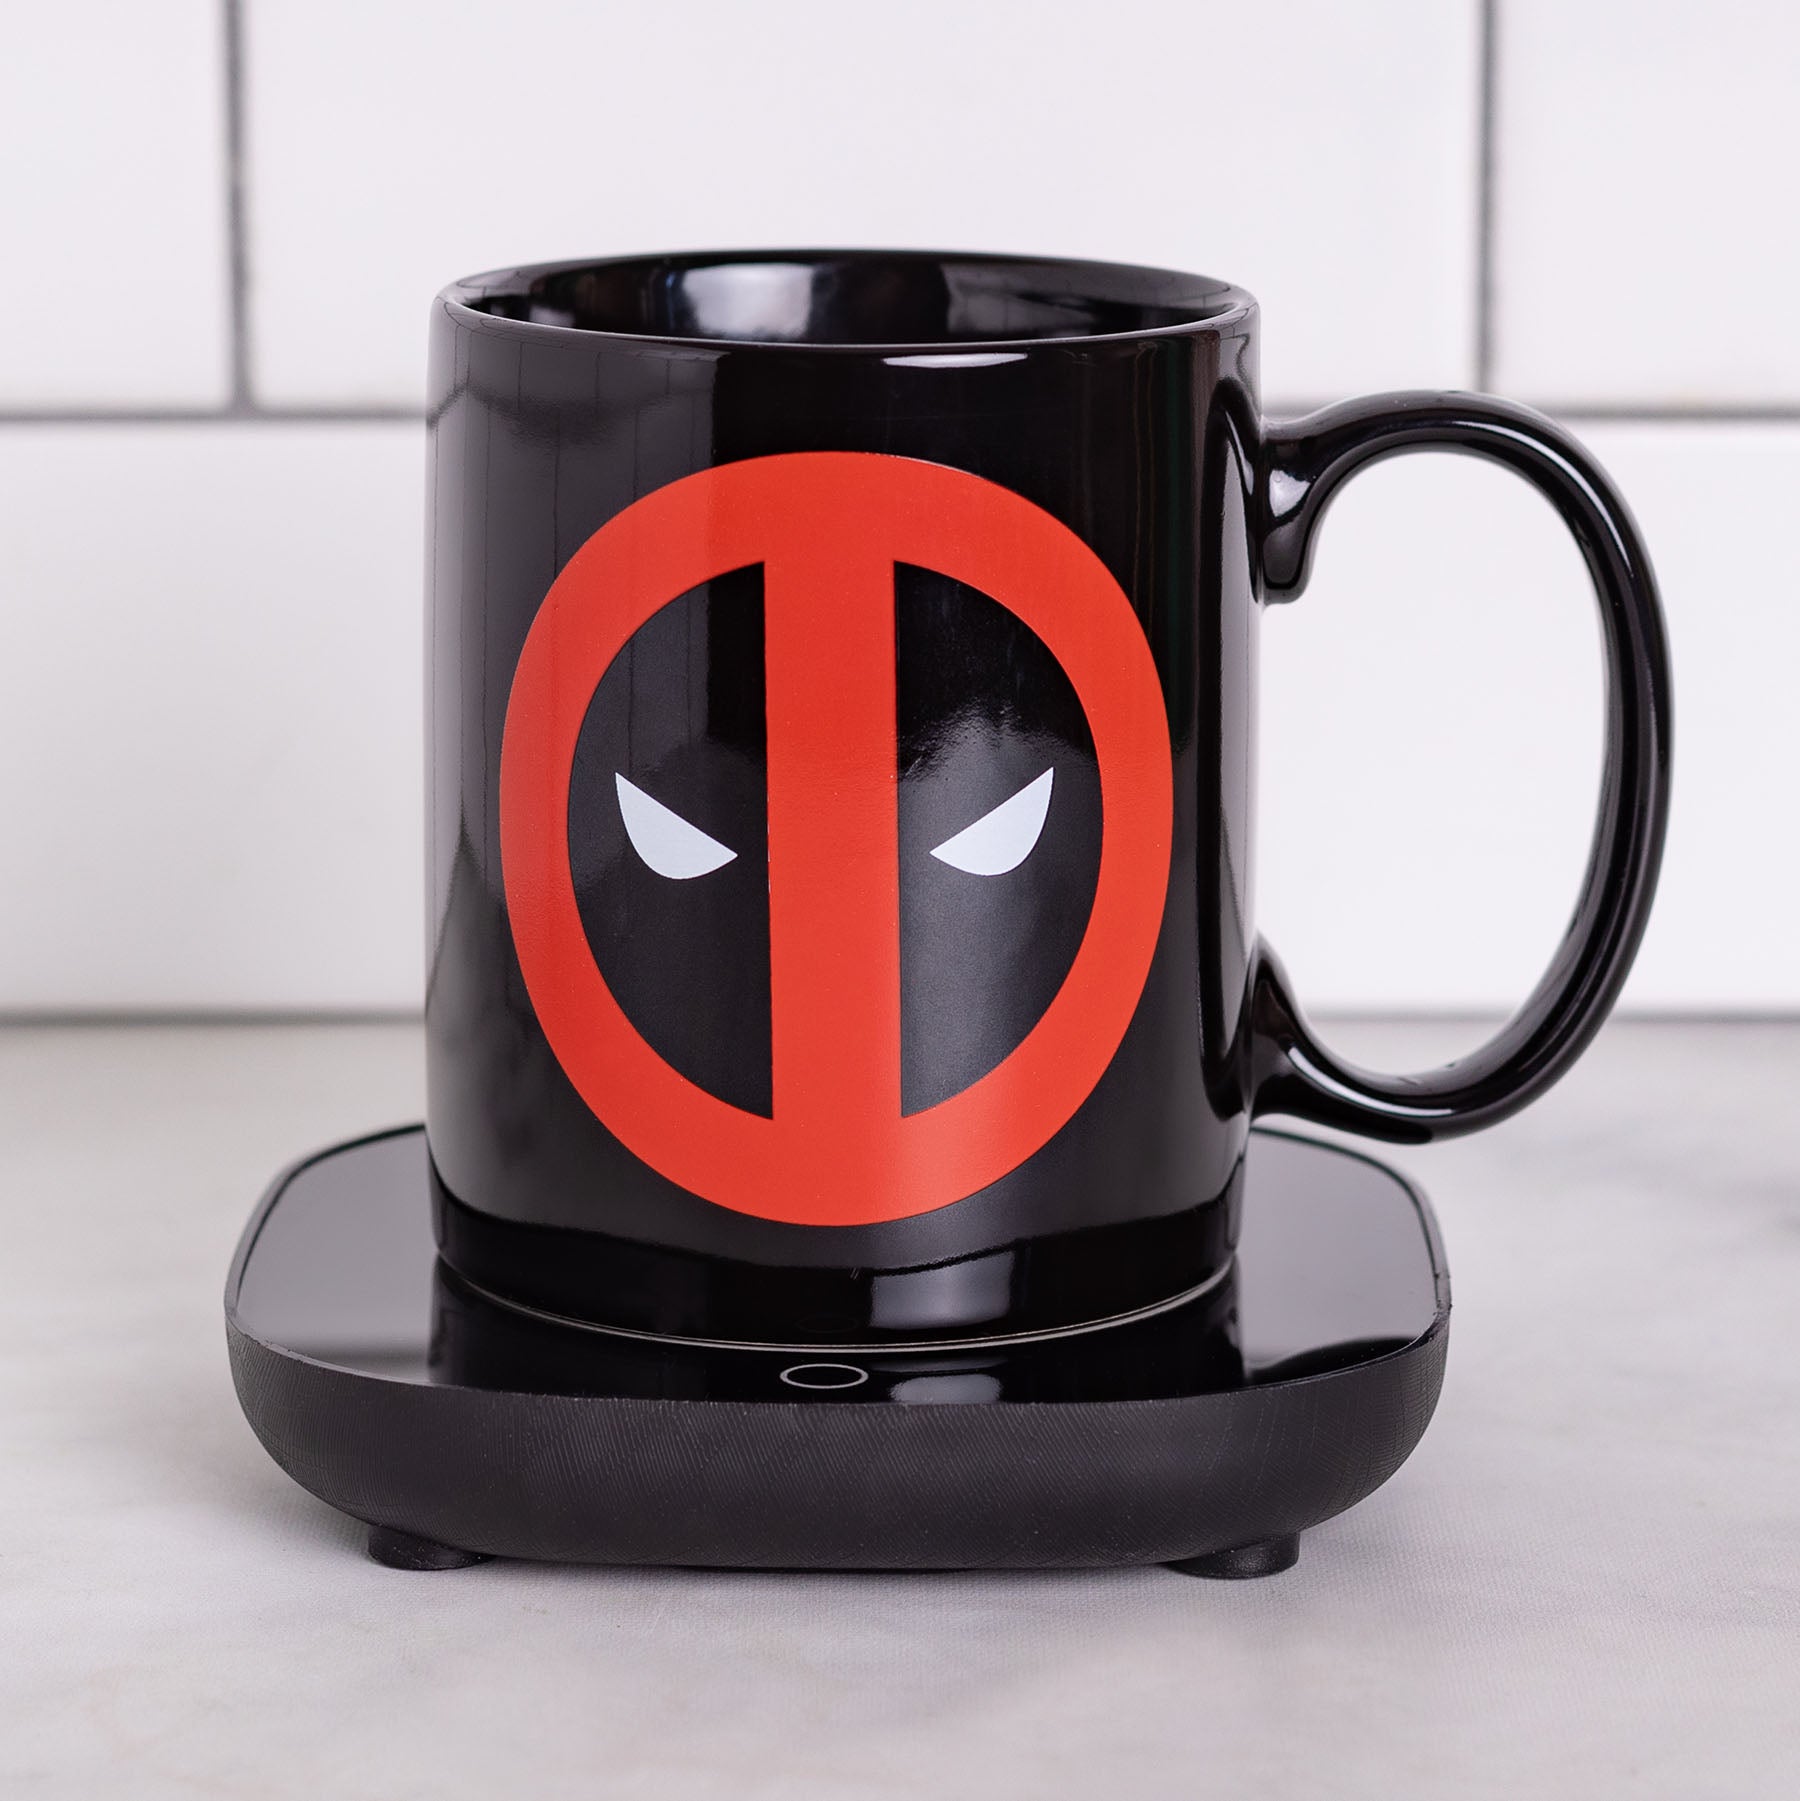 Uncanny Brands Marvel Venom Mug Warmer with Mug – Keeps Your Favorite  Beverage Warm - Auto Shut On/Off